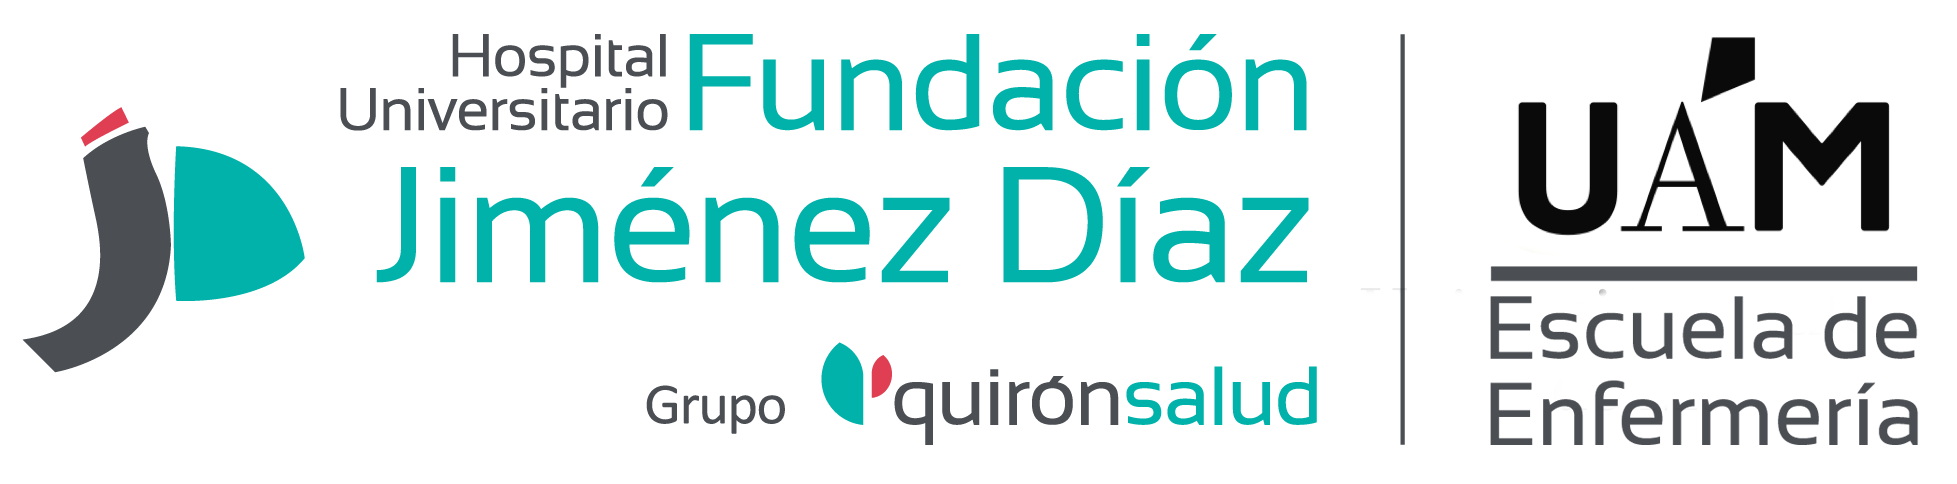 Escuela Universitaria de Enfermería - Fundación Jiménez Díaz